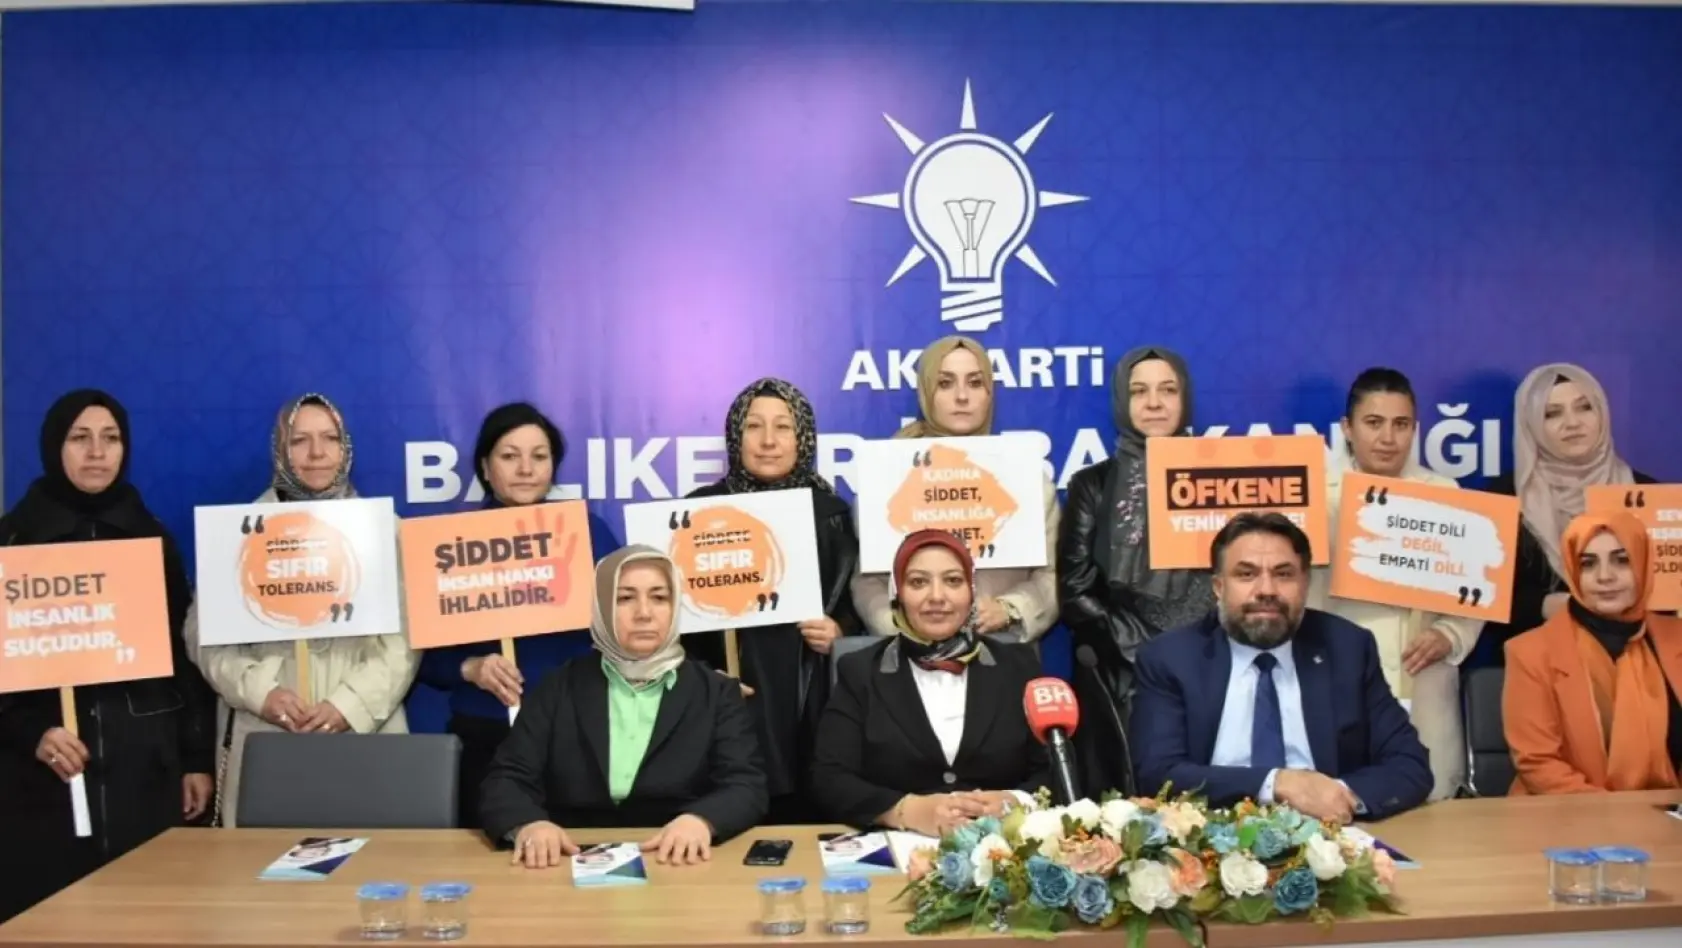 AK Parti'den kadına yönelik şiddete karşı açıklama